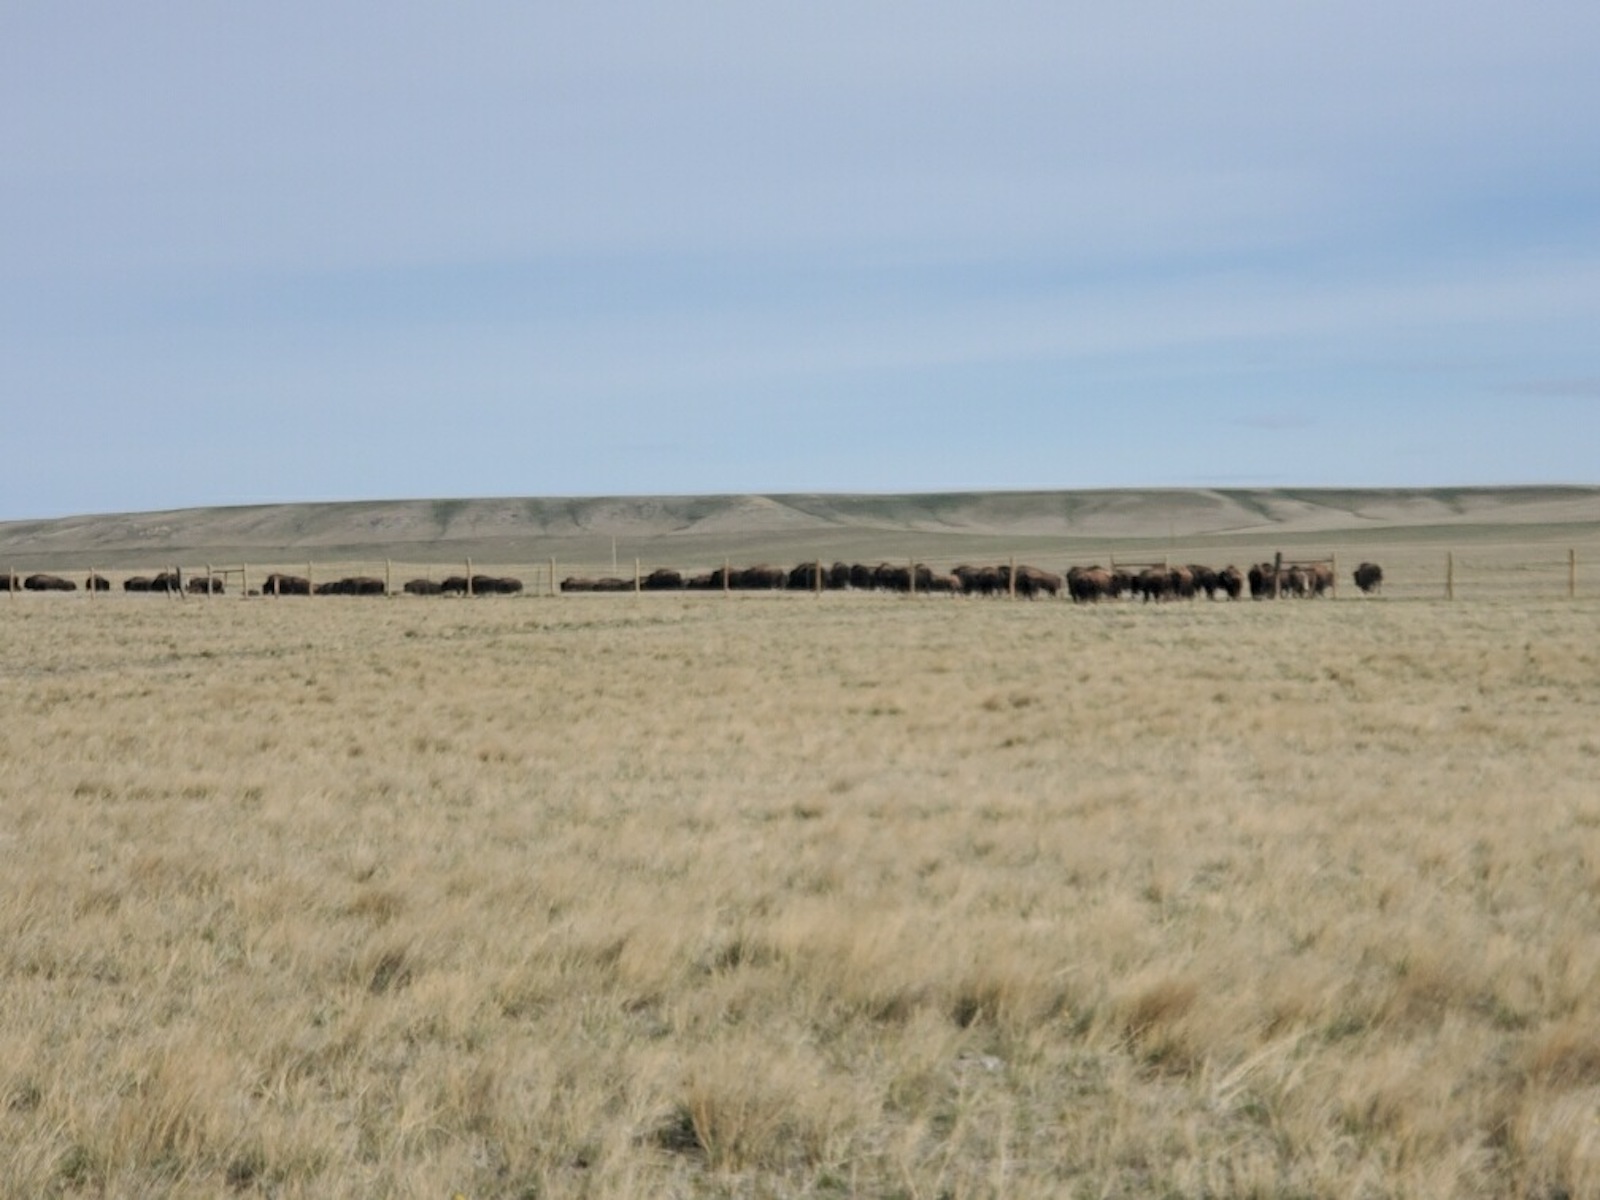 a line of buffalo far away